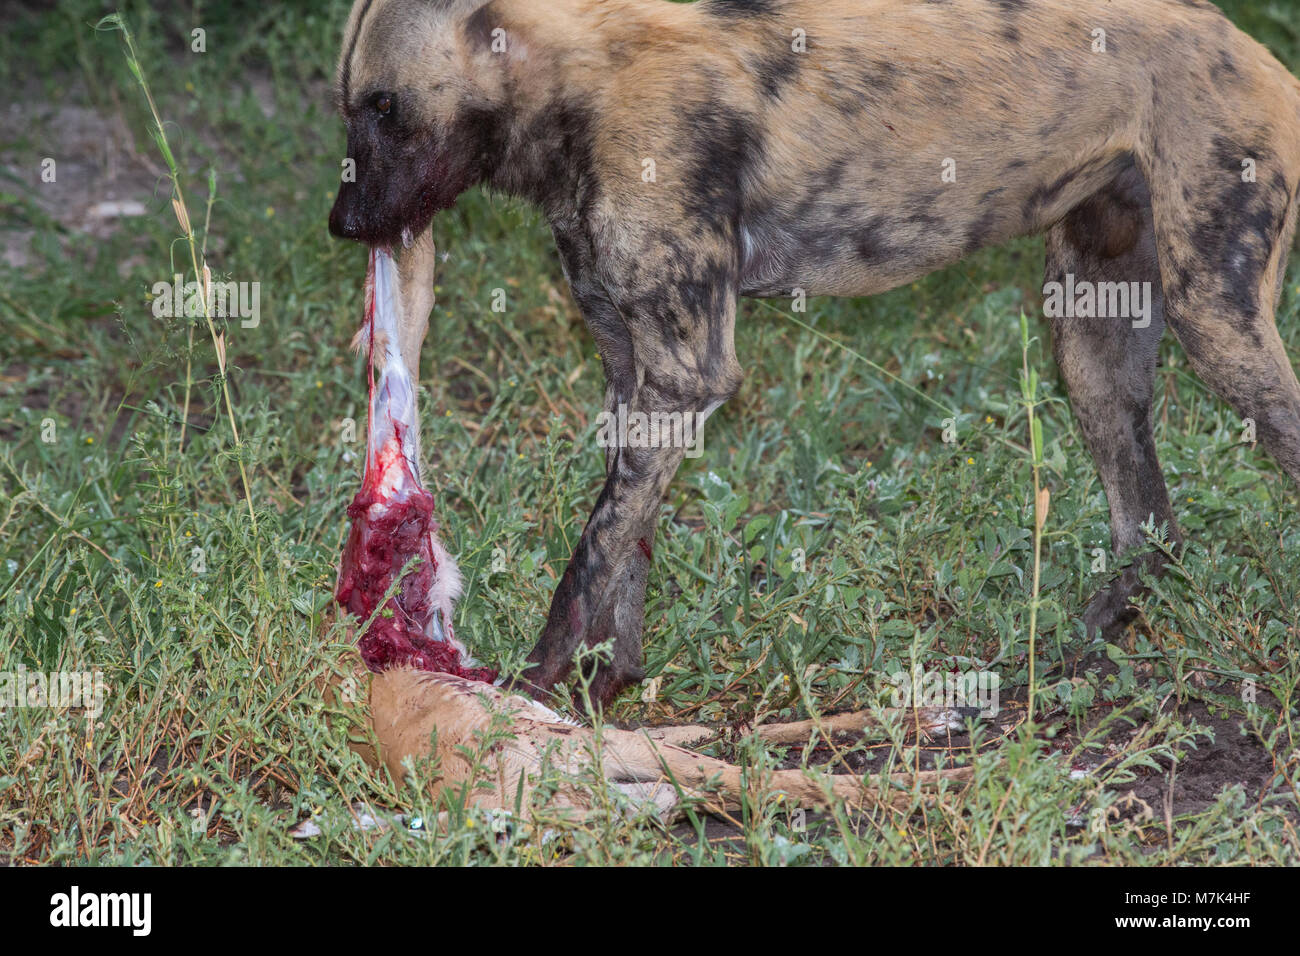 Afrikanischen wilden Jagd Hund (Lycaon pictus). Enthäuten Impala Antilopen Leiche, die blutige Fleisch, halten Sie Körper mit Füßen. Stockfoto